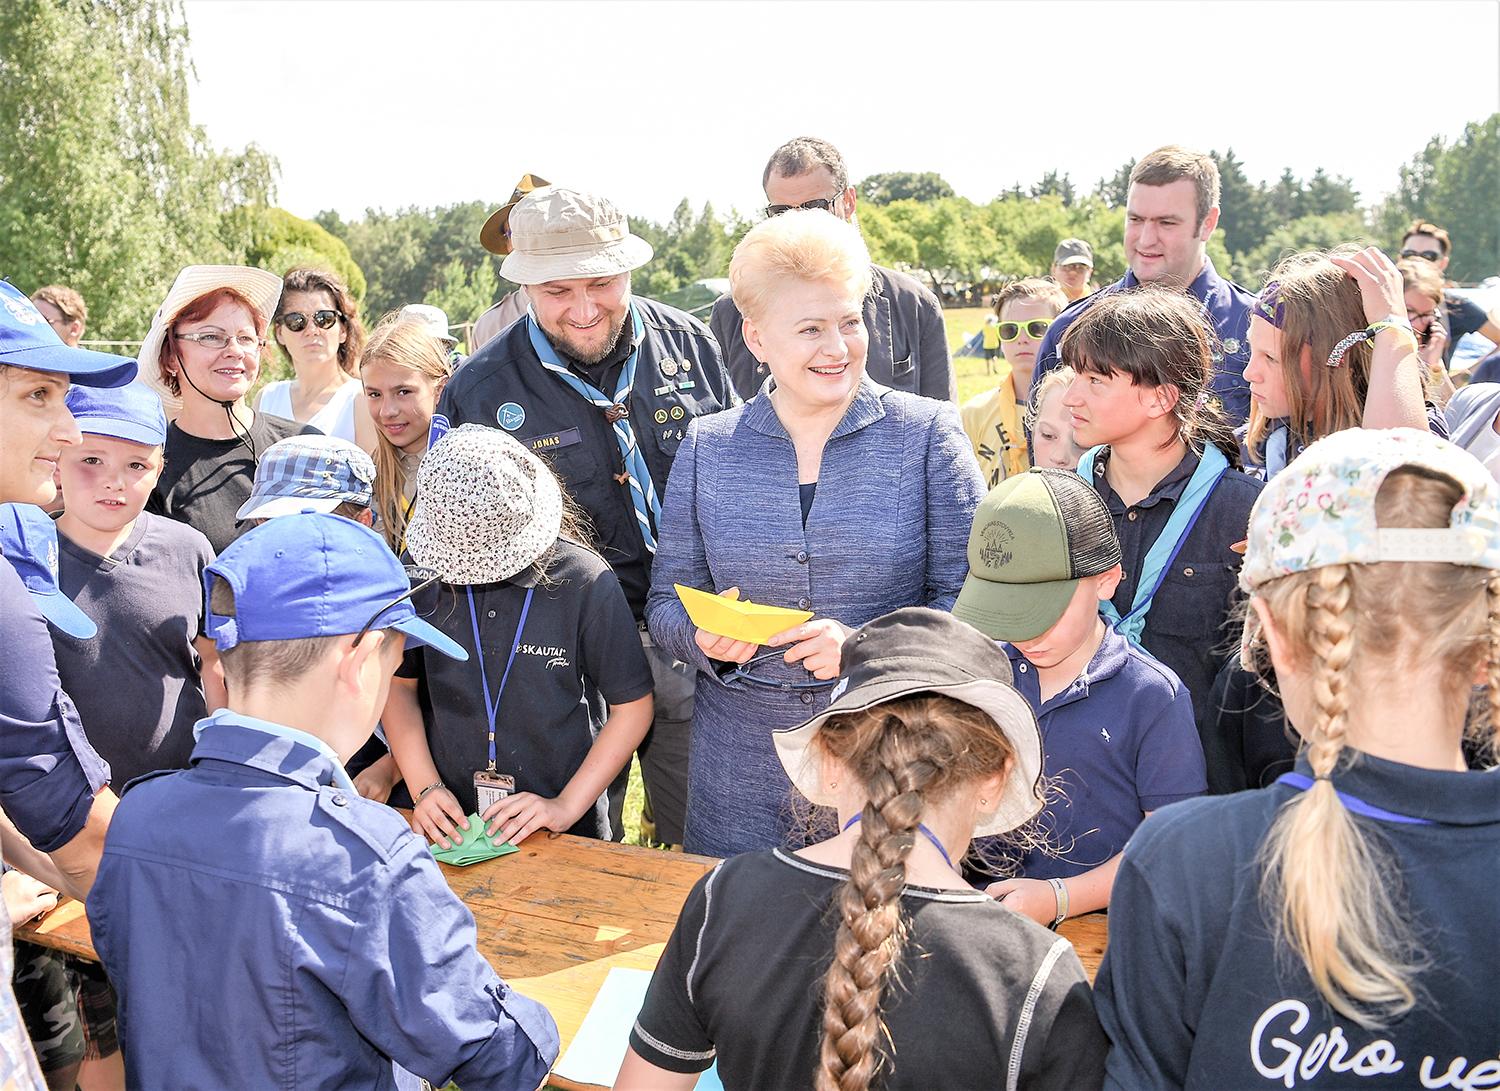 Skautus aplankė ir Lietuvos prezidentė / Prezidentė D. Grybauskaitė aplankė skautų stovyklą ir bendravo su stovyklautojais. Roberto Dačkaus nuotr.